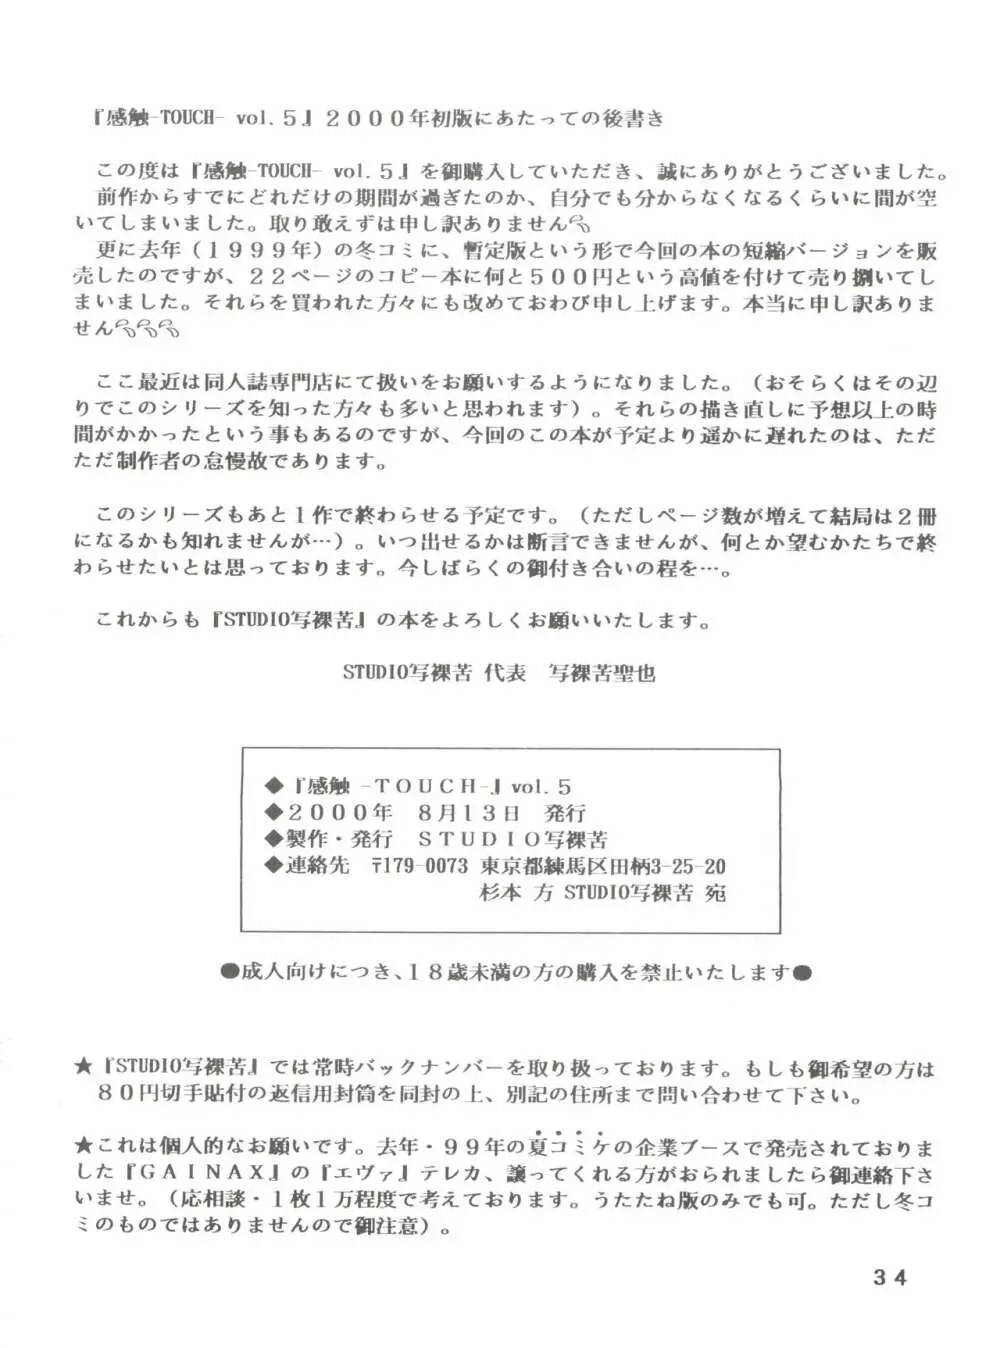 [STUDIO写裸苦 (写裸苦聖也)] 感触 -TOUCH- vol.5 (みゆき) [2000-08-13] 34ページ